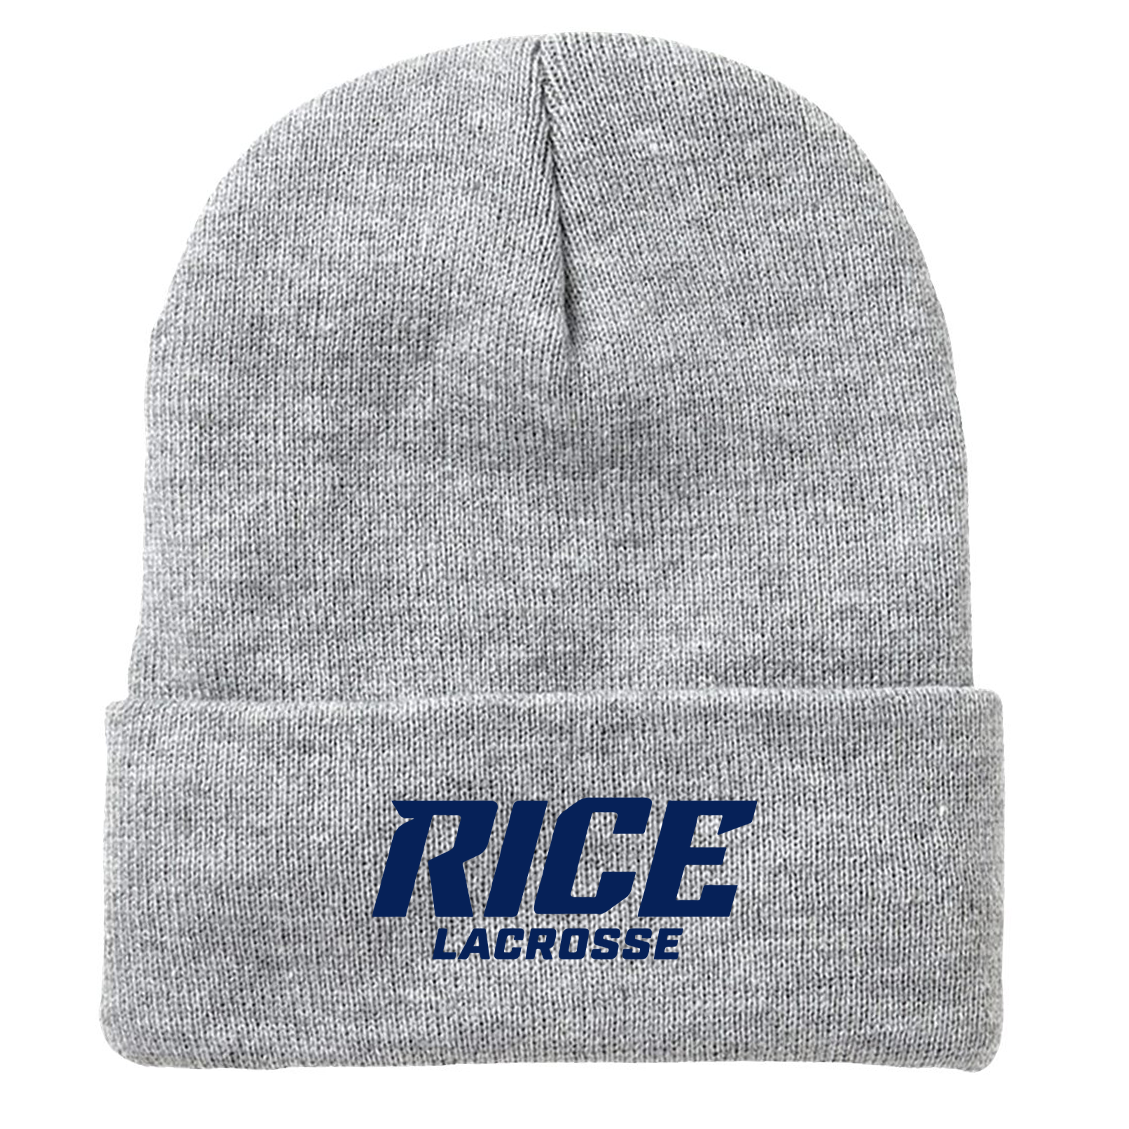 Rice University Lacrosse Fleece Lined 12" Cuffed Beanie